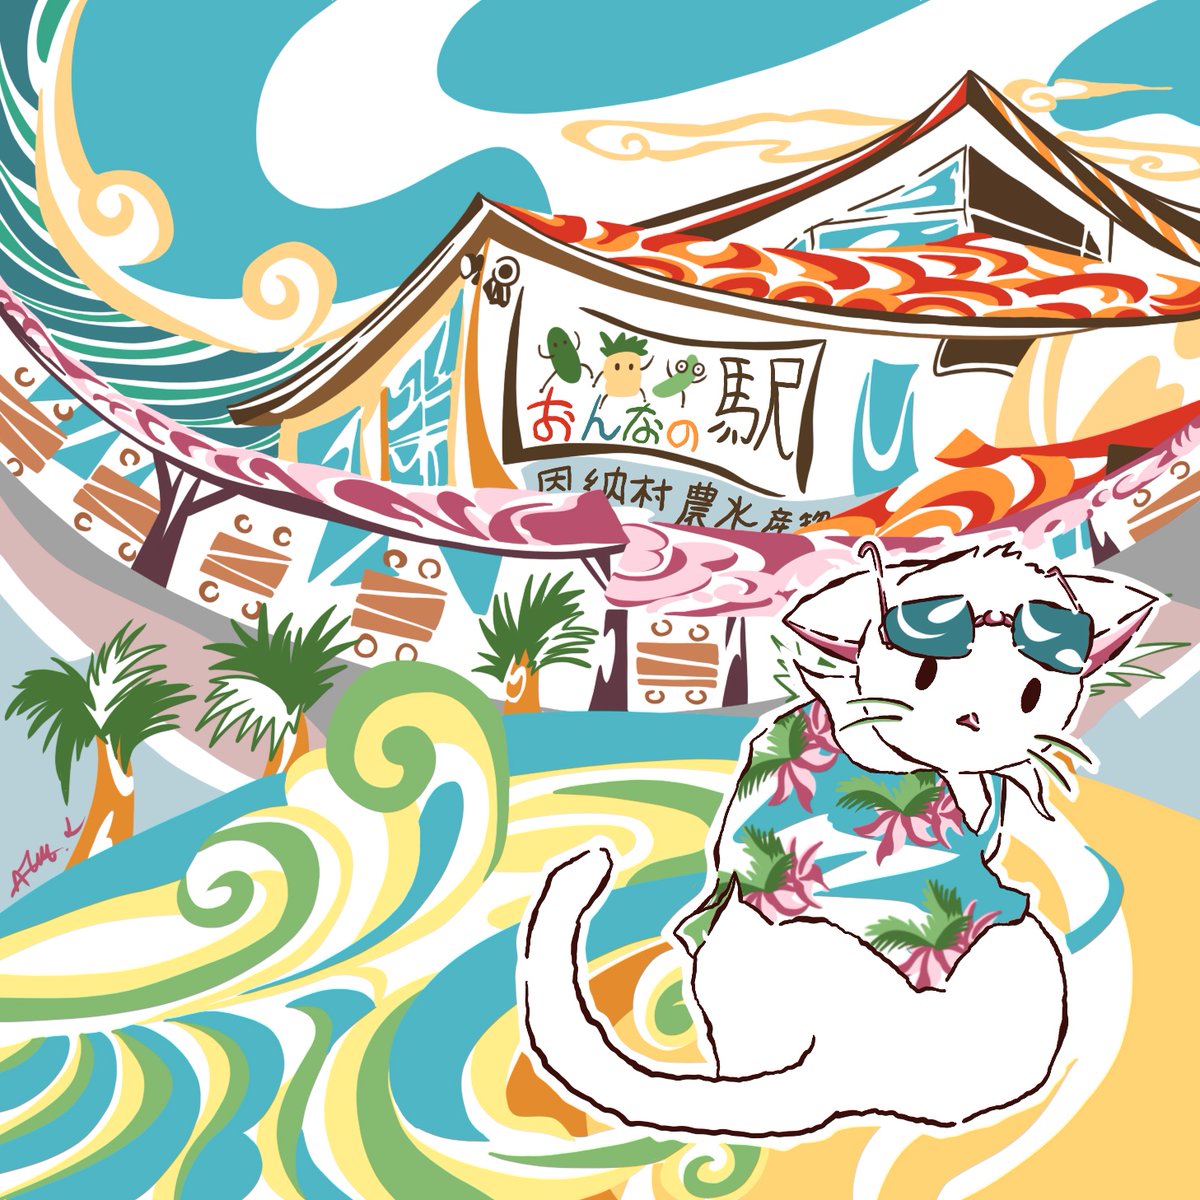 日本の沖縄で有名な地である'onna-eki'の絵です。沖縄の風景に合わせて特徴的なタッチで描いています。色鮮やかで、不思議な世界へ迷い込んだような絵です。#art #恩納の駅 #芸術 #illustration #猫 #cat #イラスト #沖縄 #Japan #oracle #道の駅 #旅行 #trip #Oracle #感情 #emotion #心 #mind